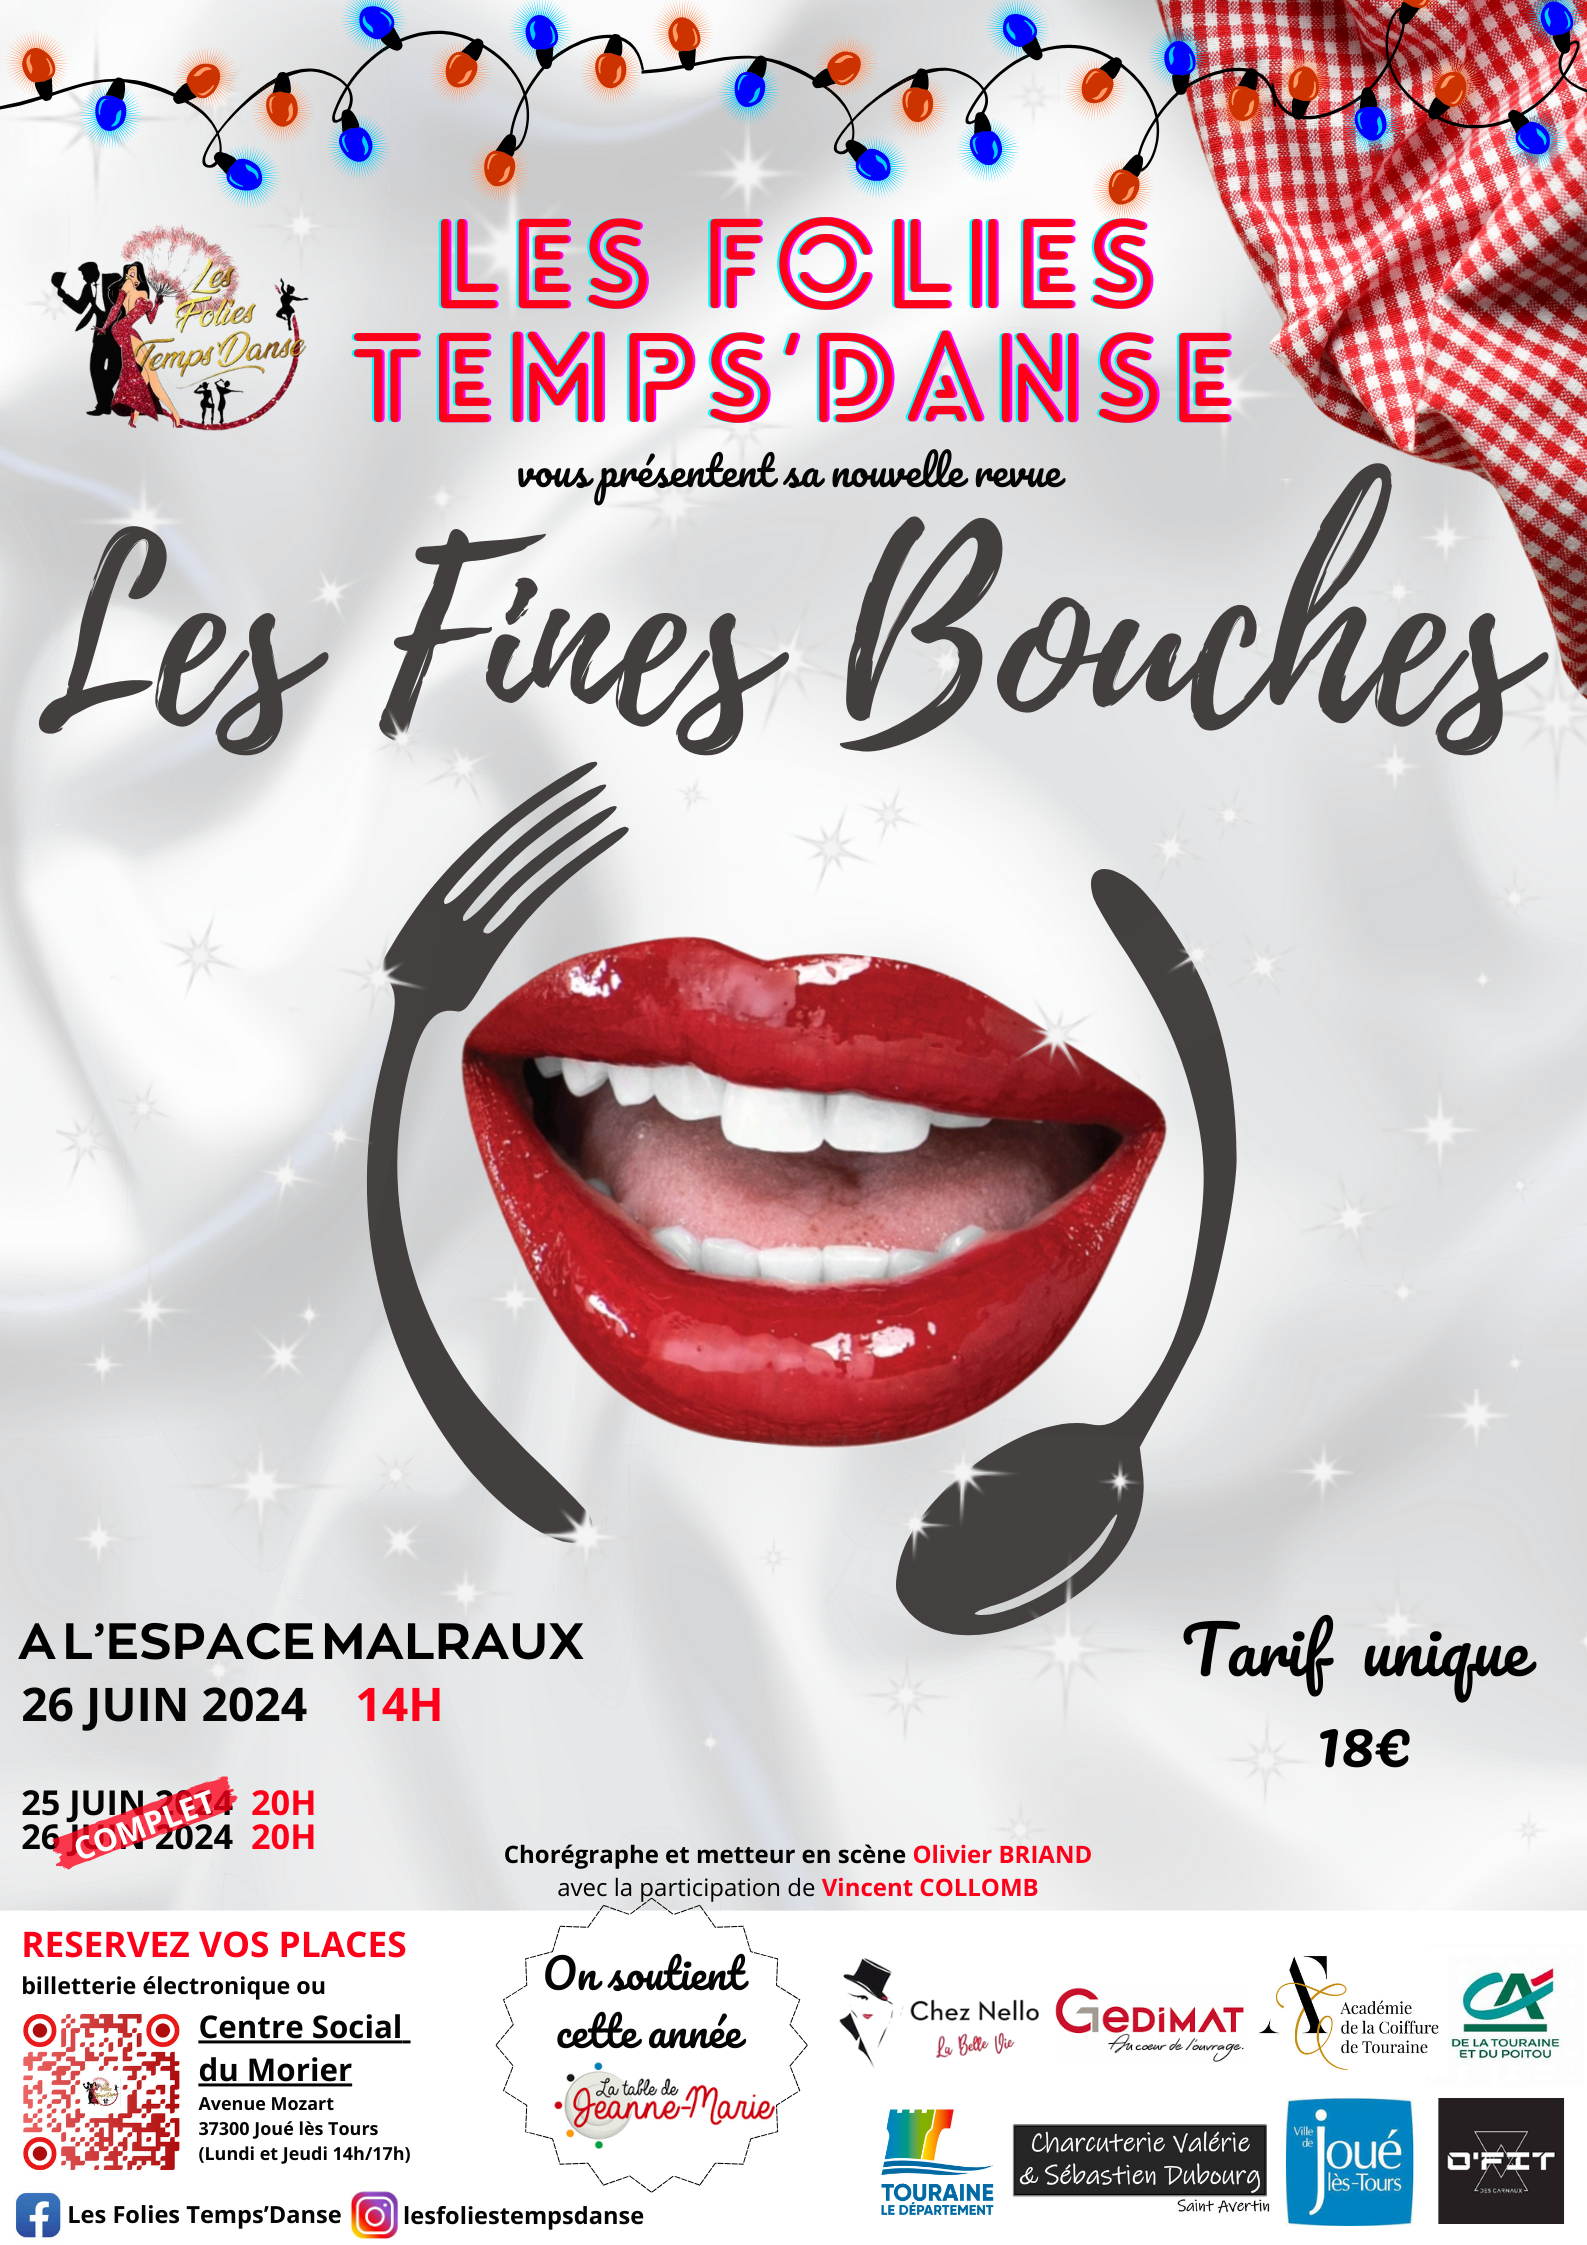 Les Folies Temps'Danse vous présente leur nouveau spectacle : "Les Fines Bouches"